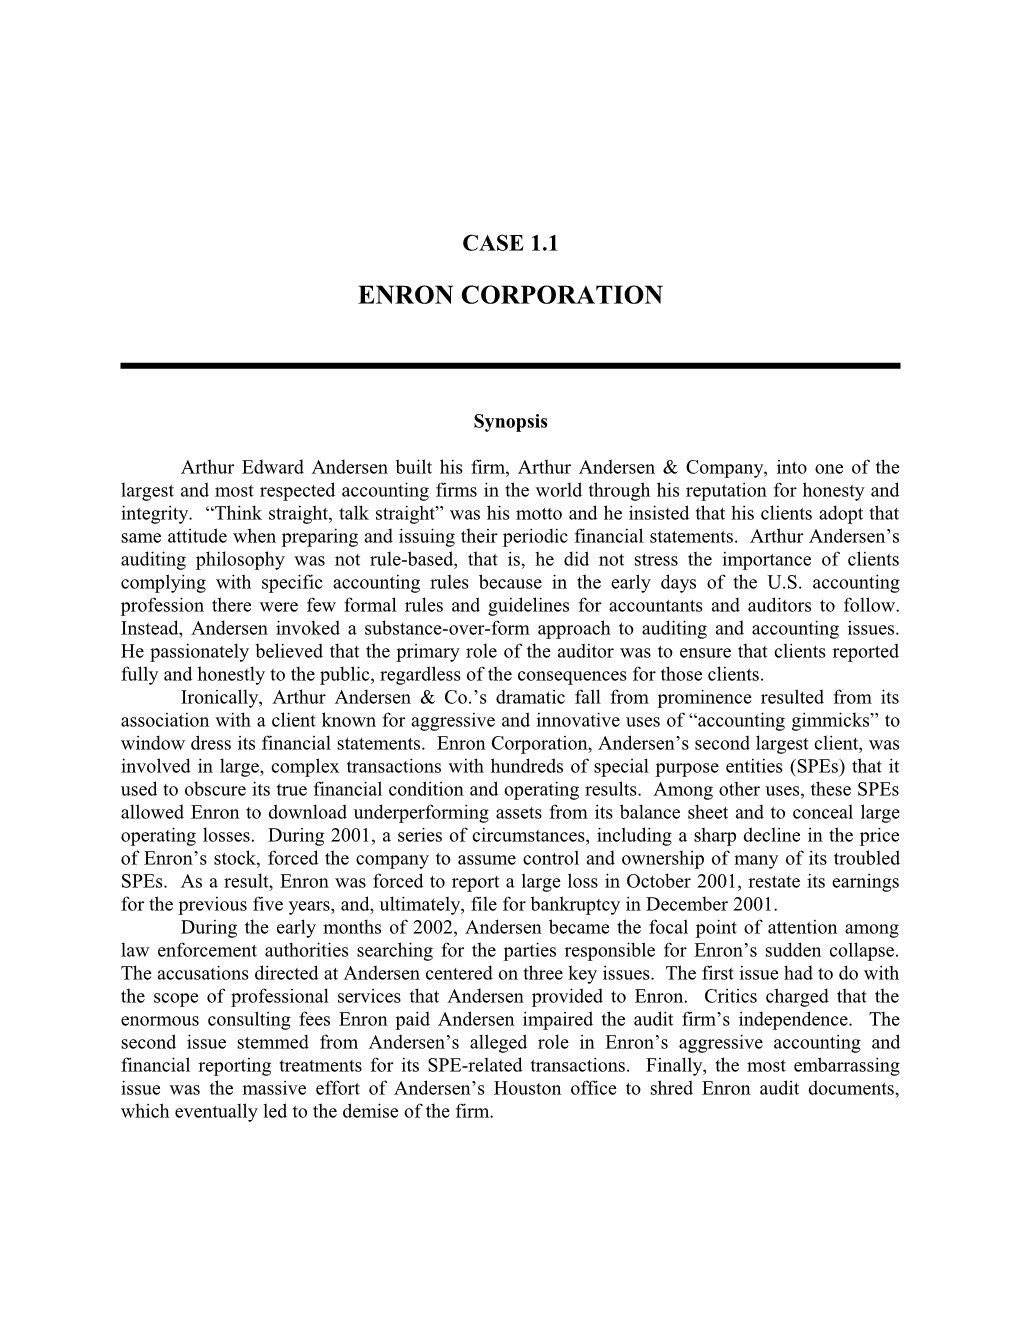 Case 1.1 Enron Corporation 1